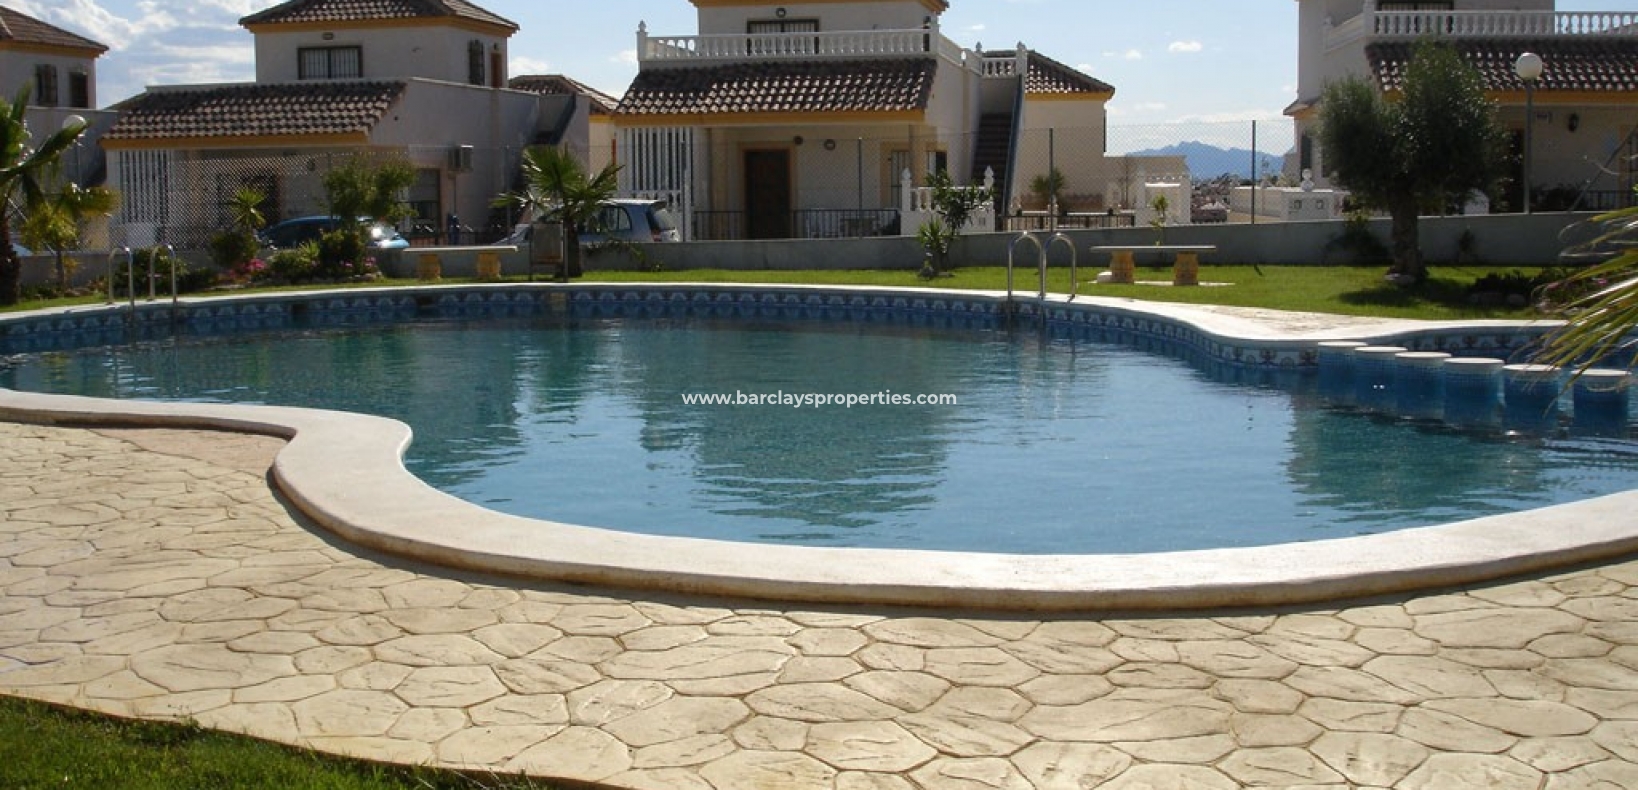 Gemensam pool - Fristående villa till salu i La Marina Urb